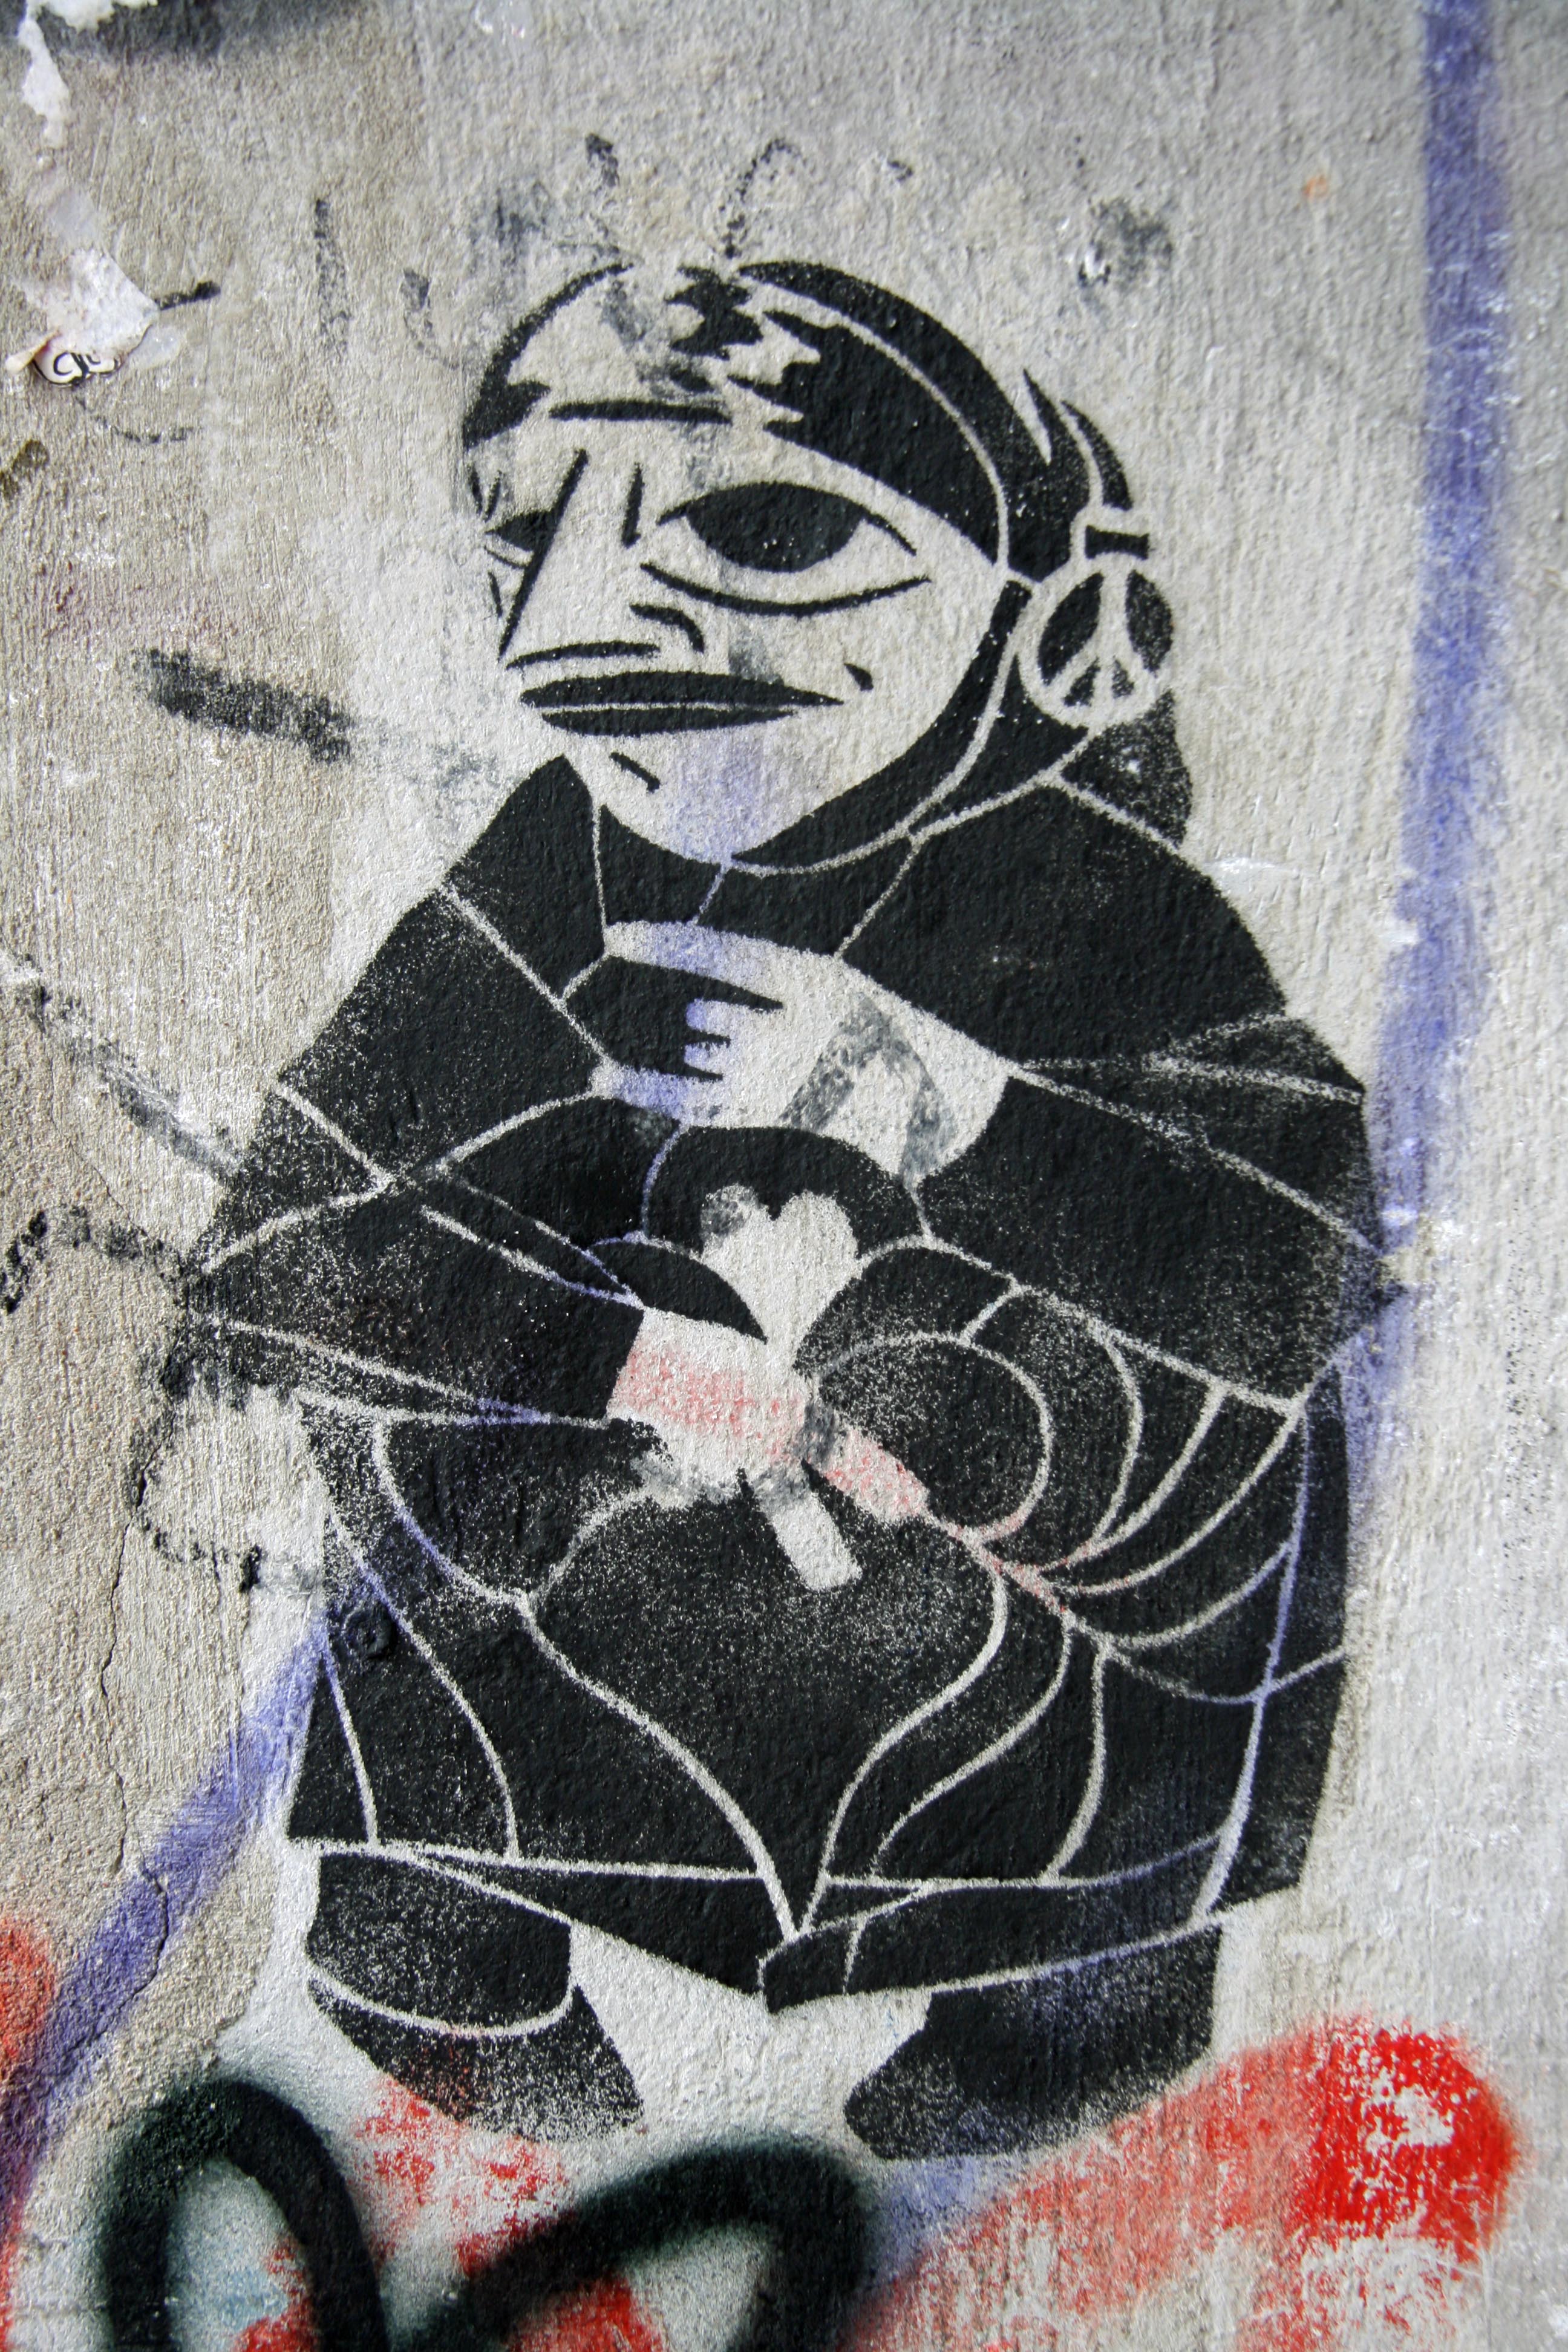 Old Woman: Street Art by Unknown Artist in Berlin